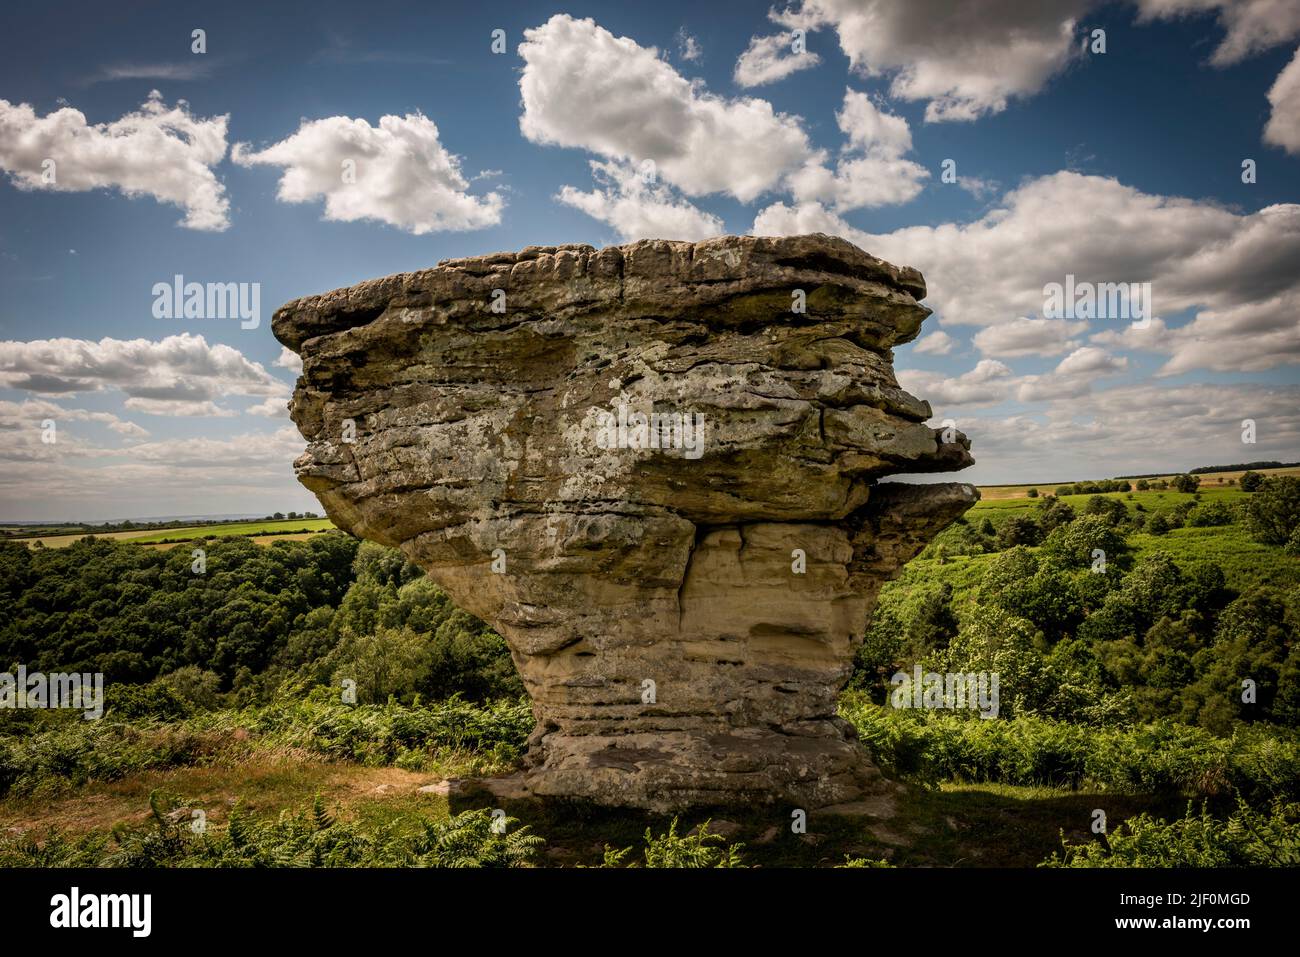 Las formaciones rocosas naturales de Bridestos creadas por la erosión en el bosque de Dalby, North Yorkshire, Reino Unido Foto de stock